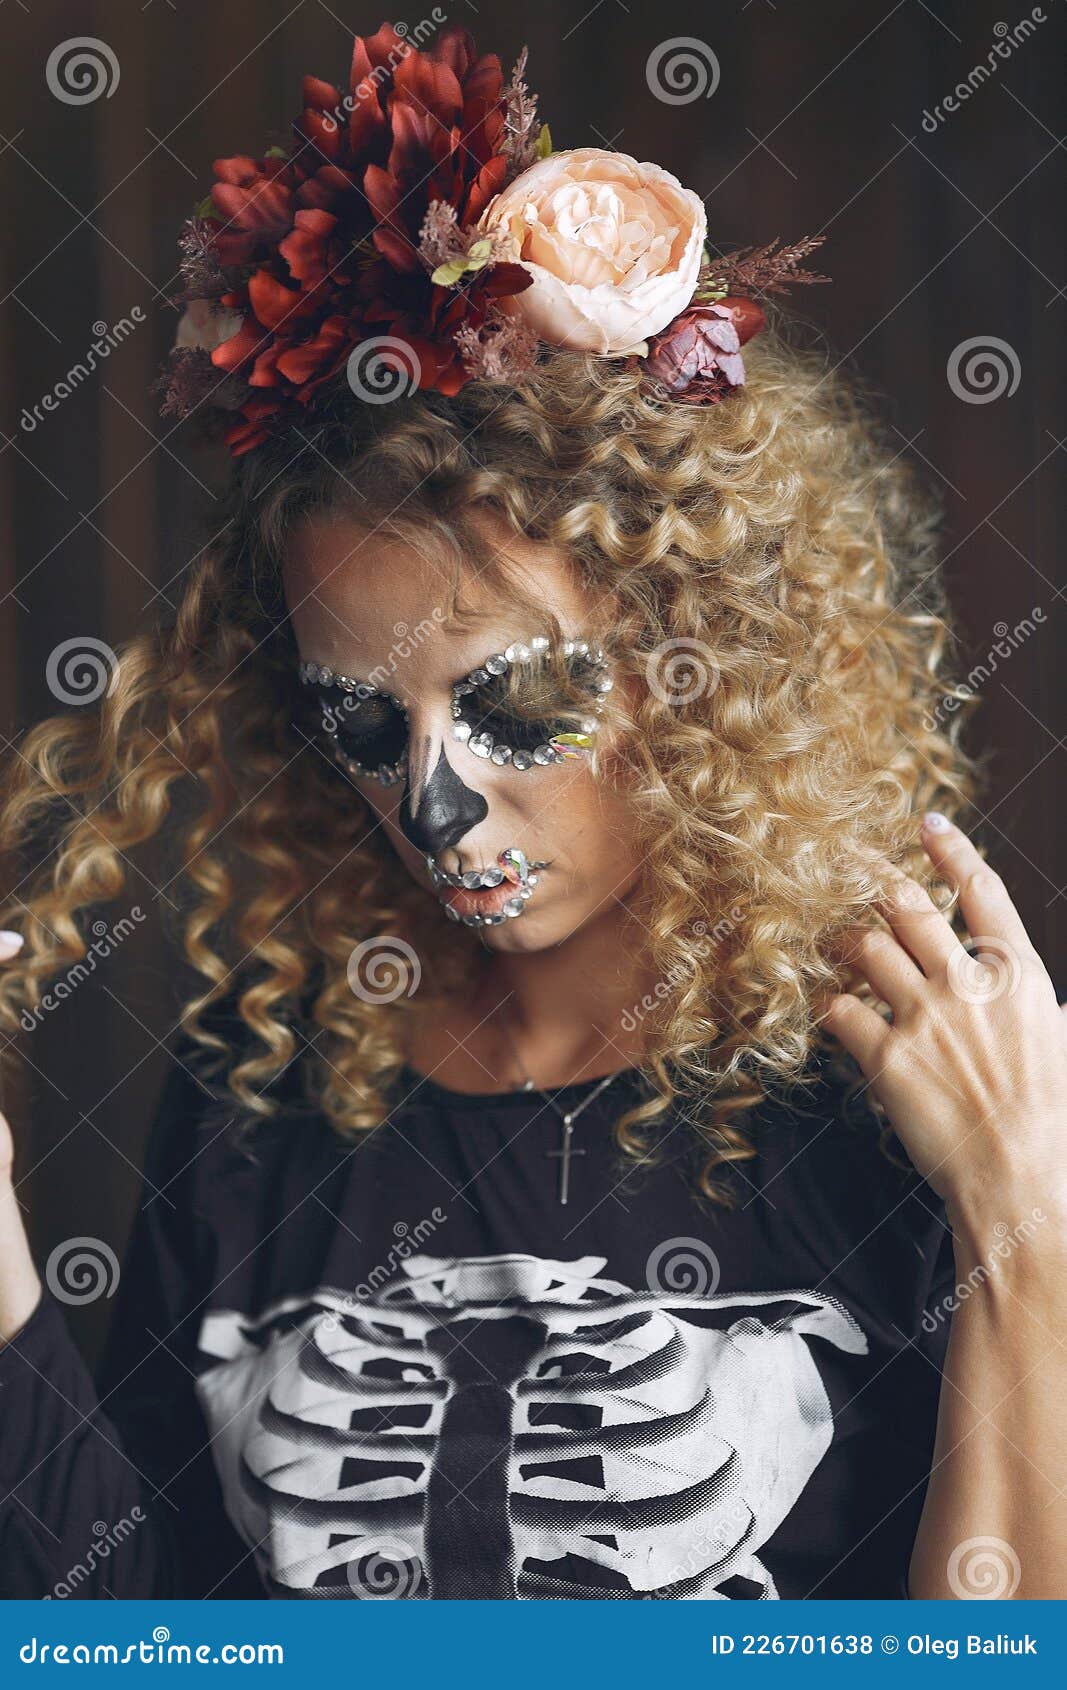 Maquiagem de Halloween para homens: caveiras e outras fantasias em